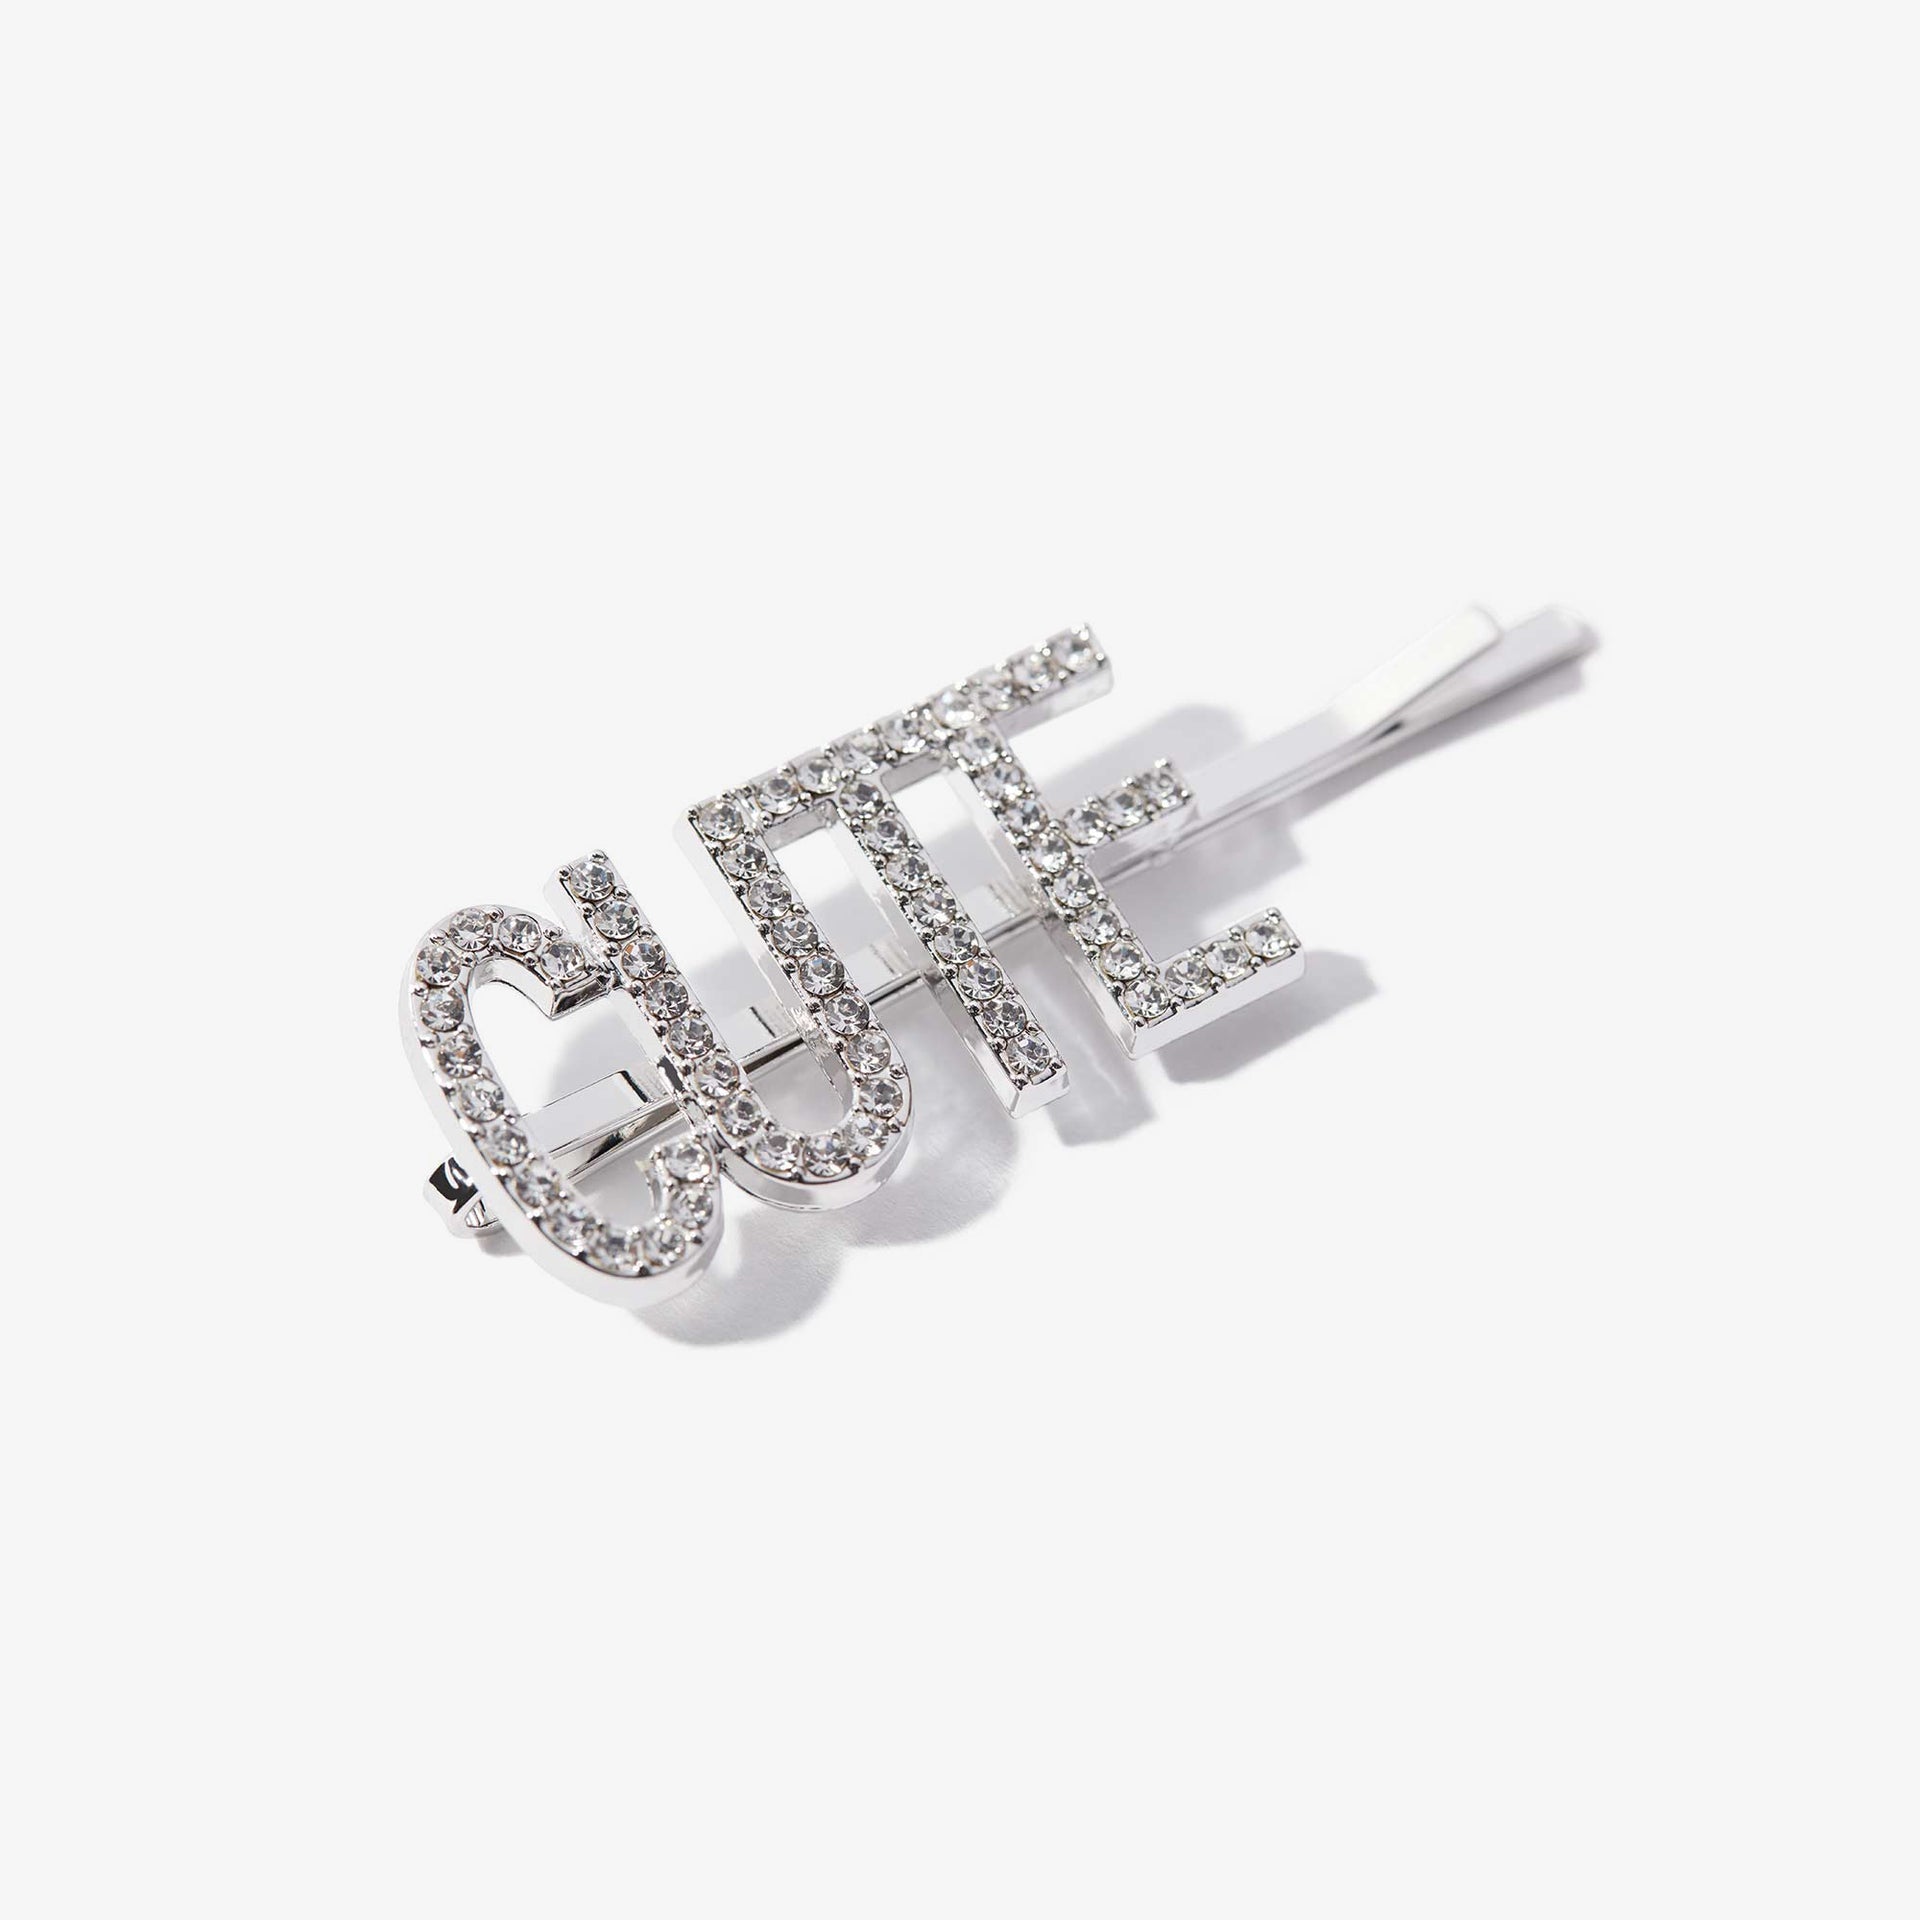 ABH Glam Hairpins - Silver Rhinestone Cute